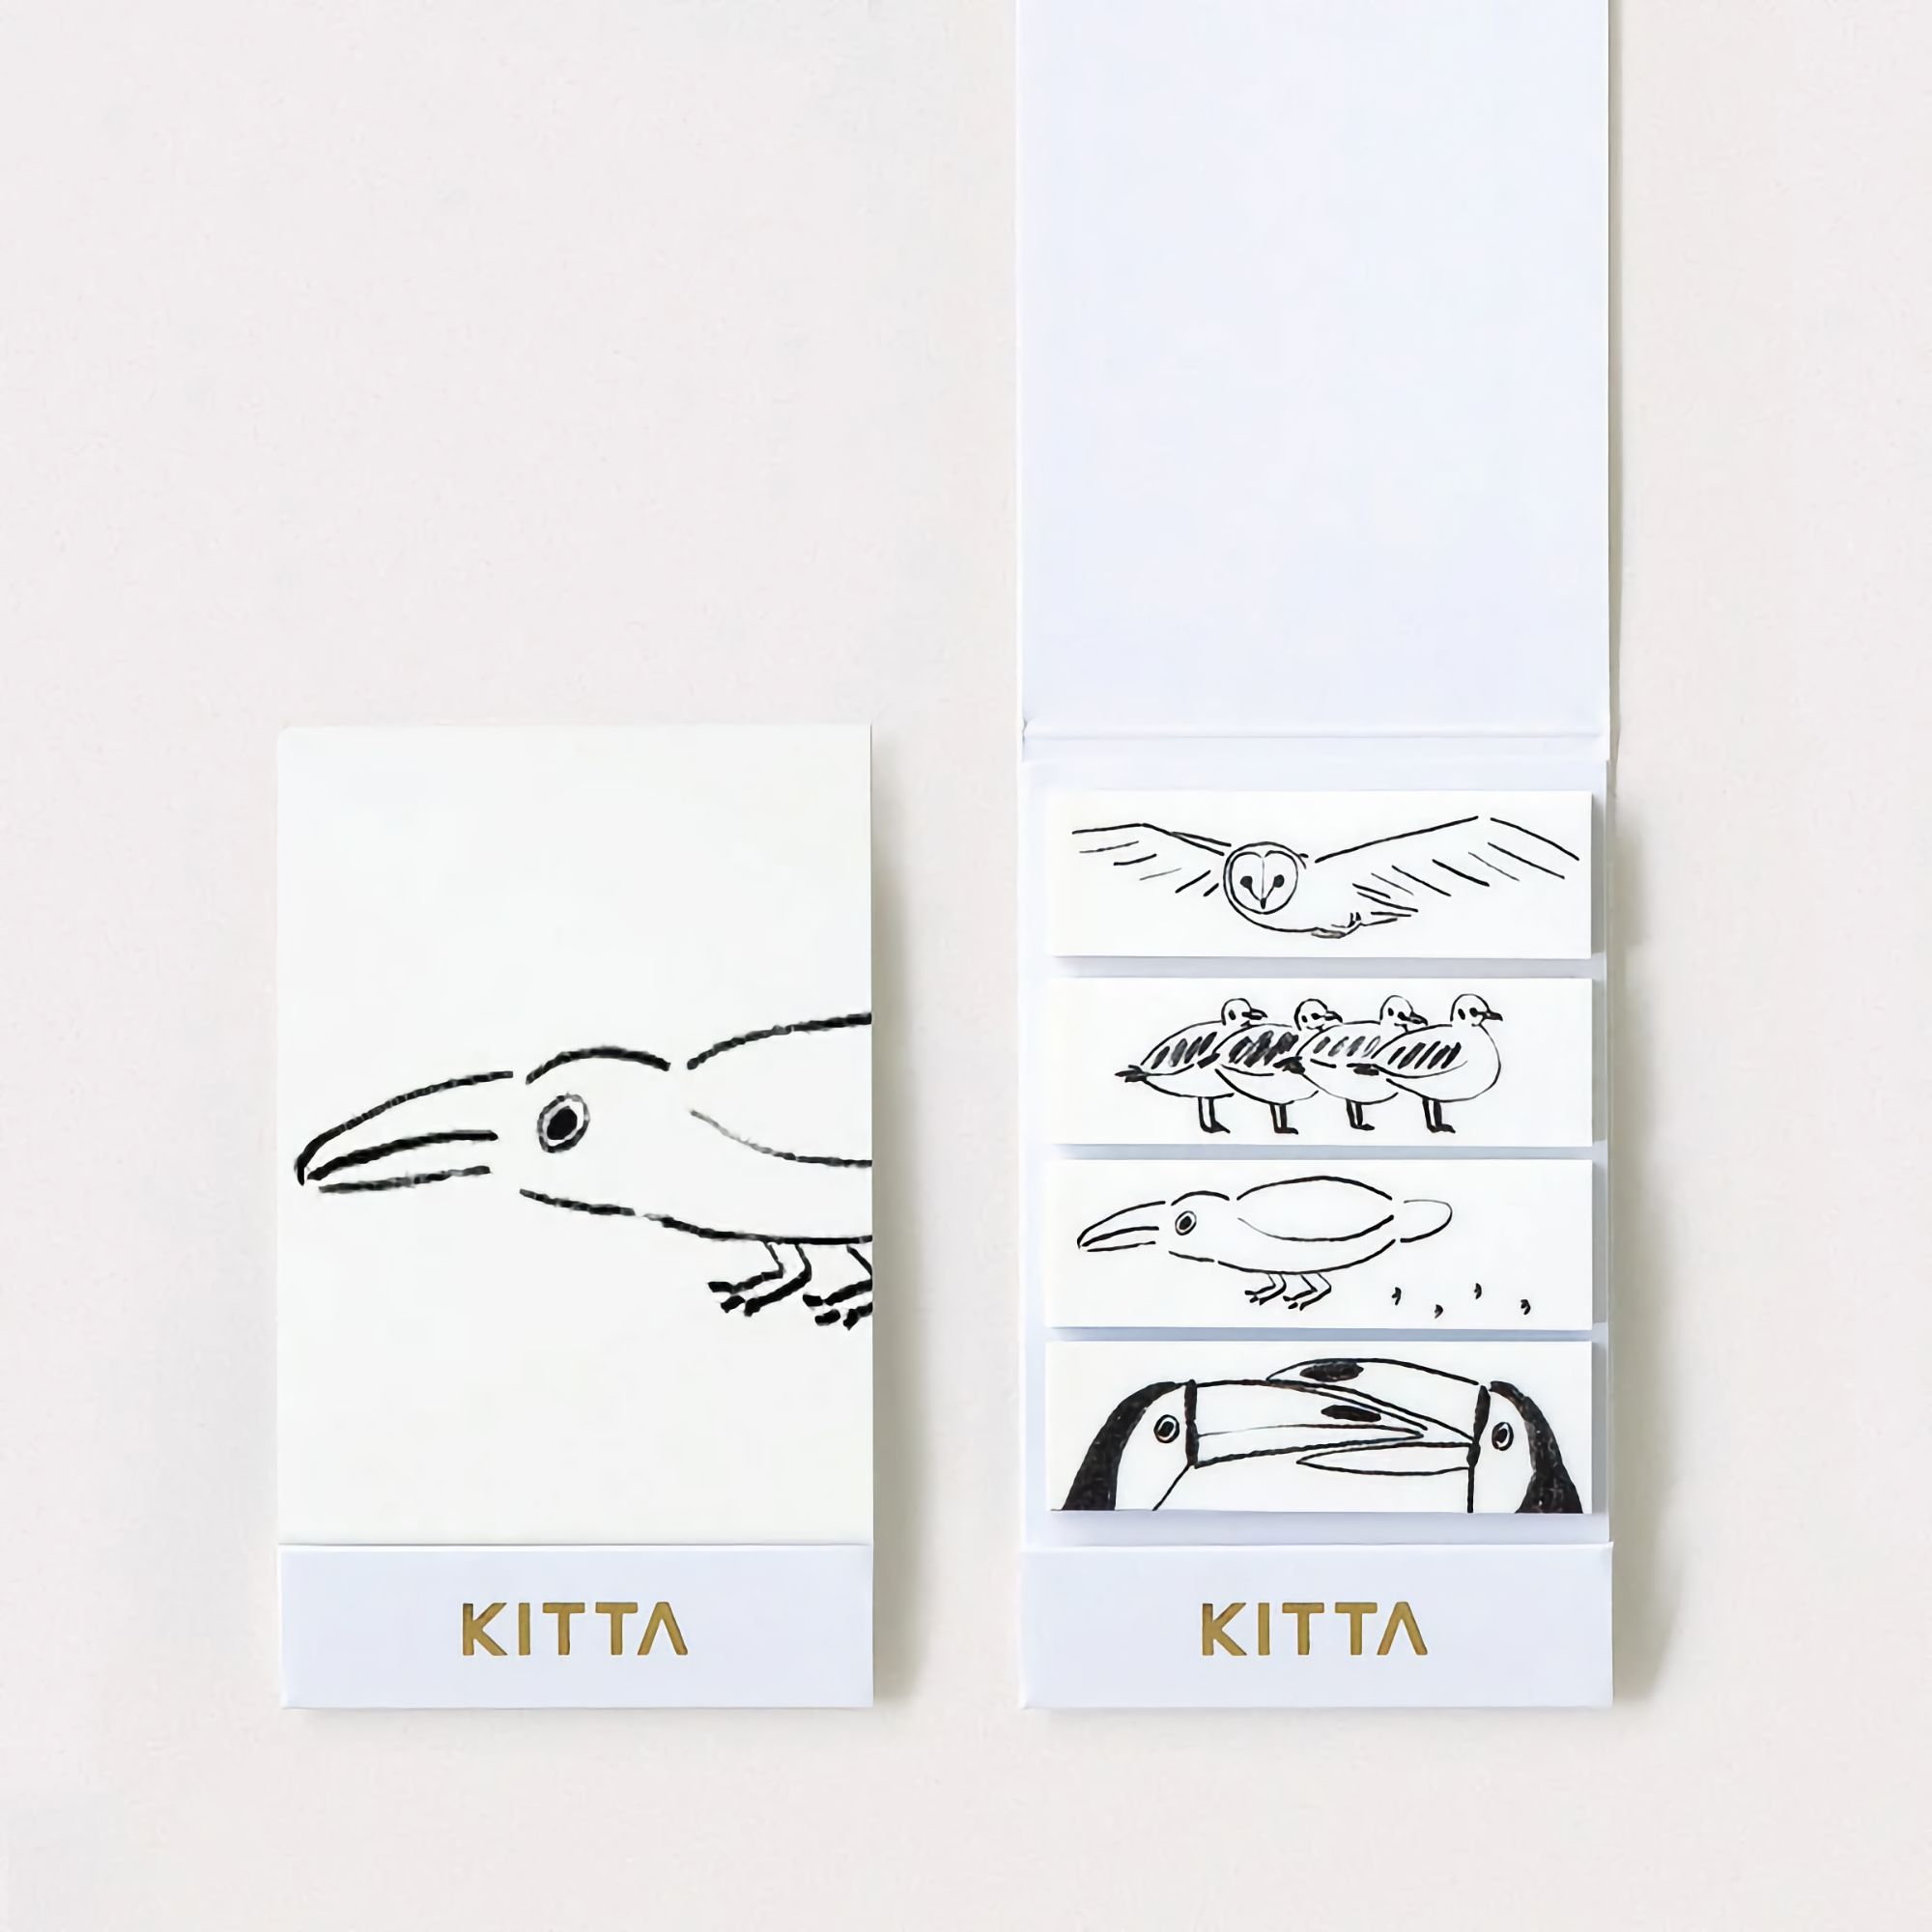 KITTA Basic Bird Washi Tape